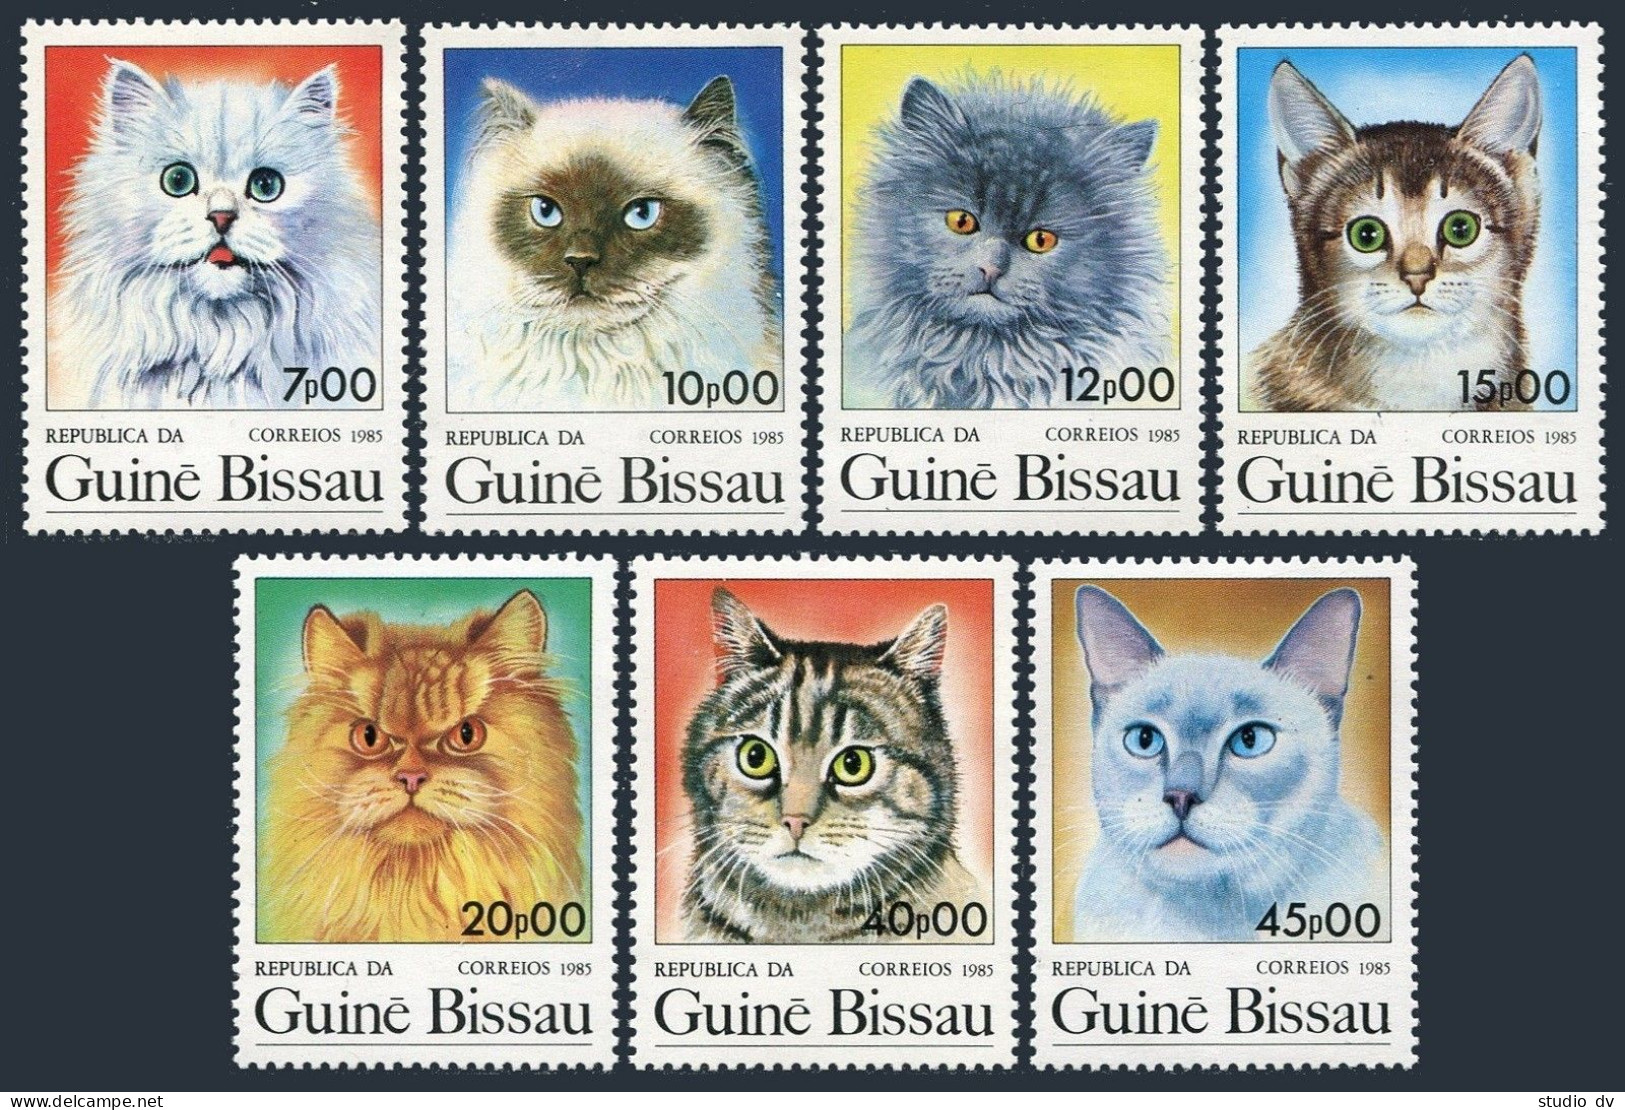 Guinea Bissau 647-653,654 Sheet, MNH. Mi 854-862,863 Bl.264. Cats. ARGENTINA-85. - Guinea-Bissau